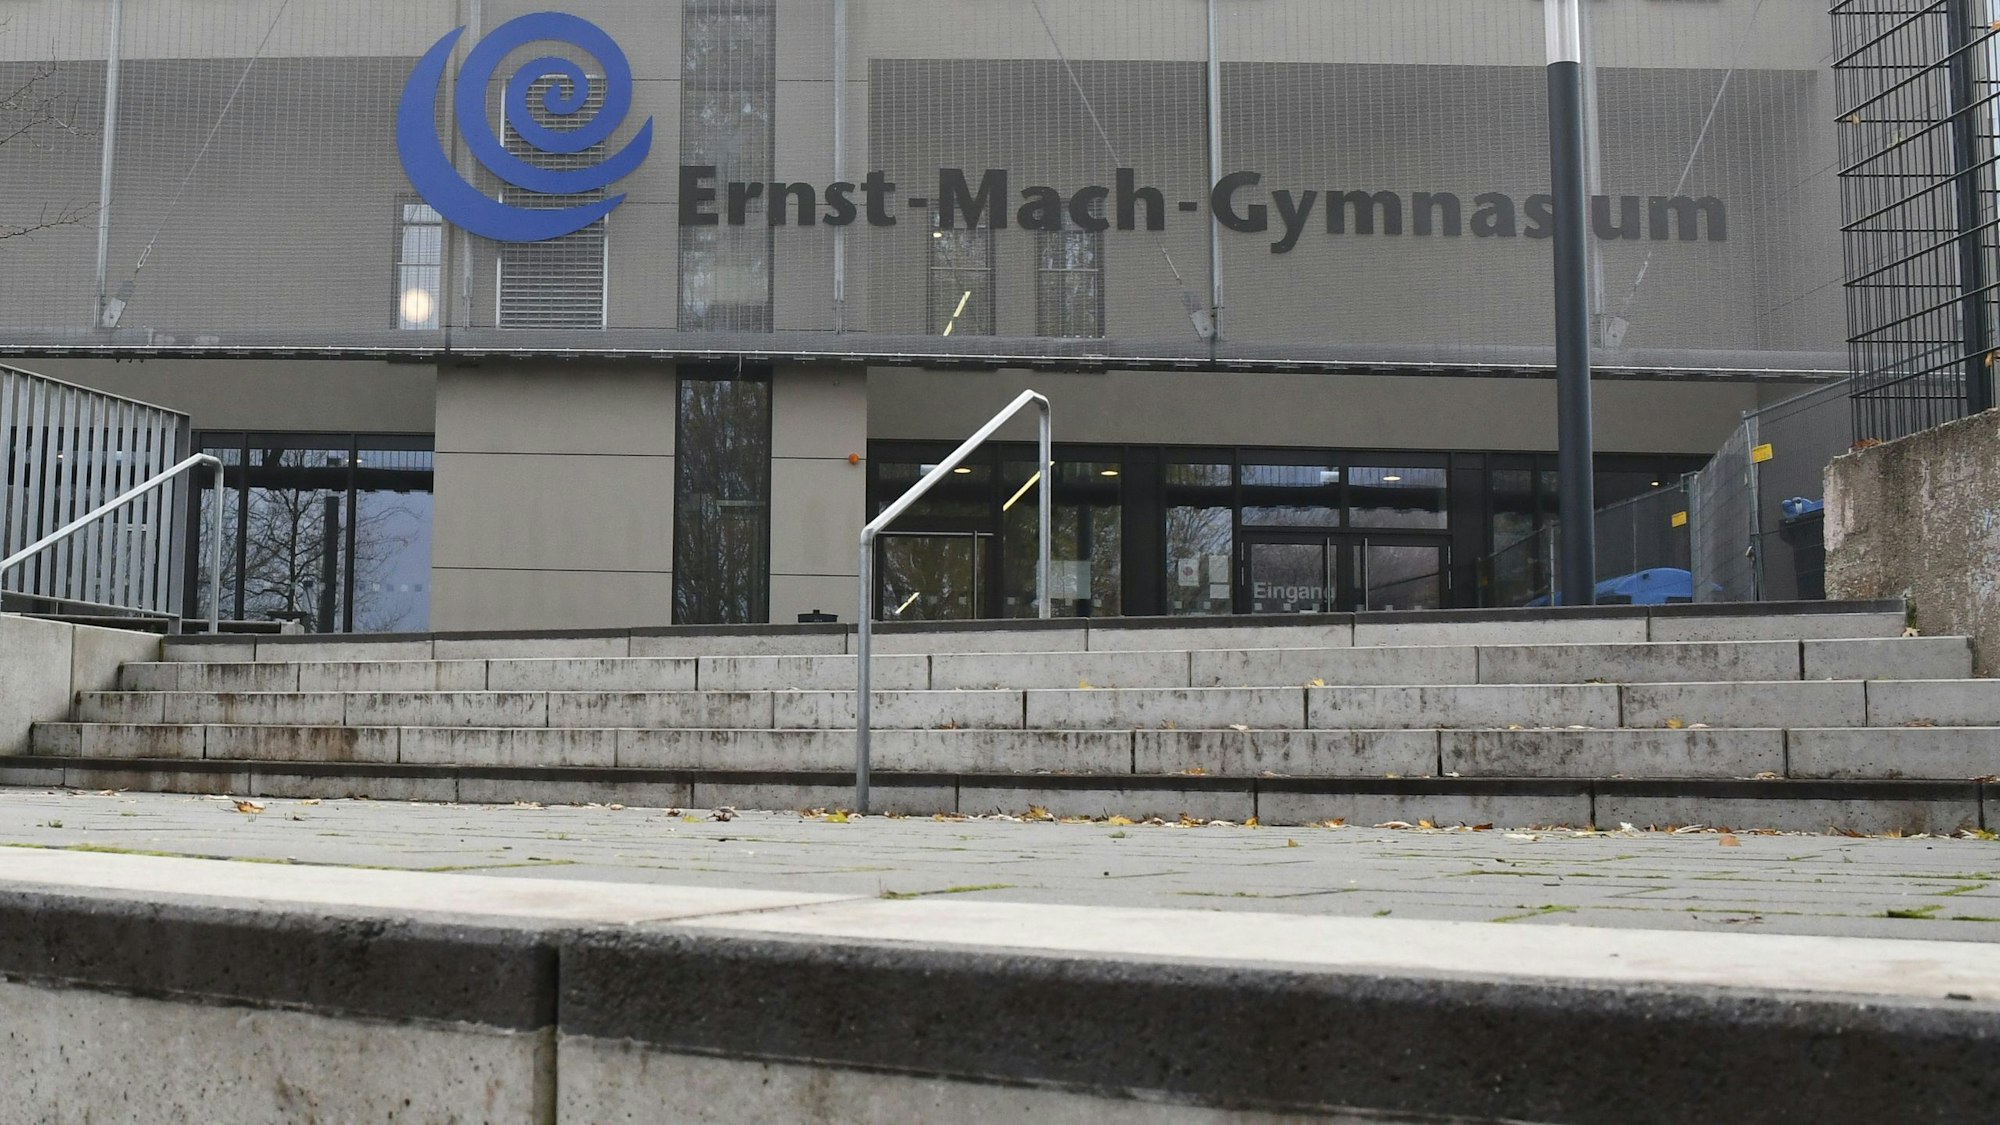 Das Bild zeigt eine Außenansicht vom Ernst-Mach-Gymnasium.